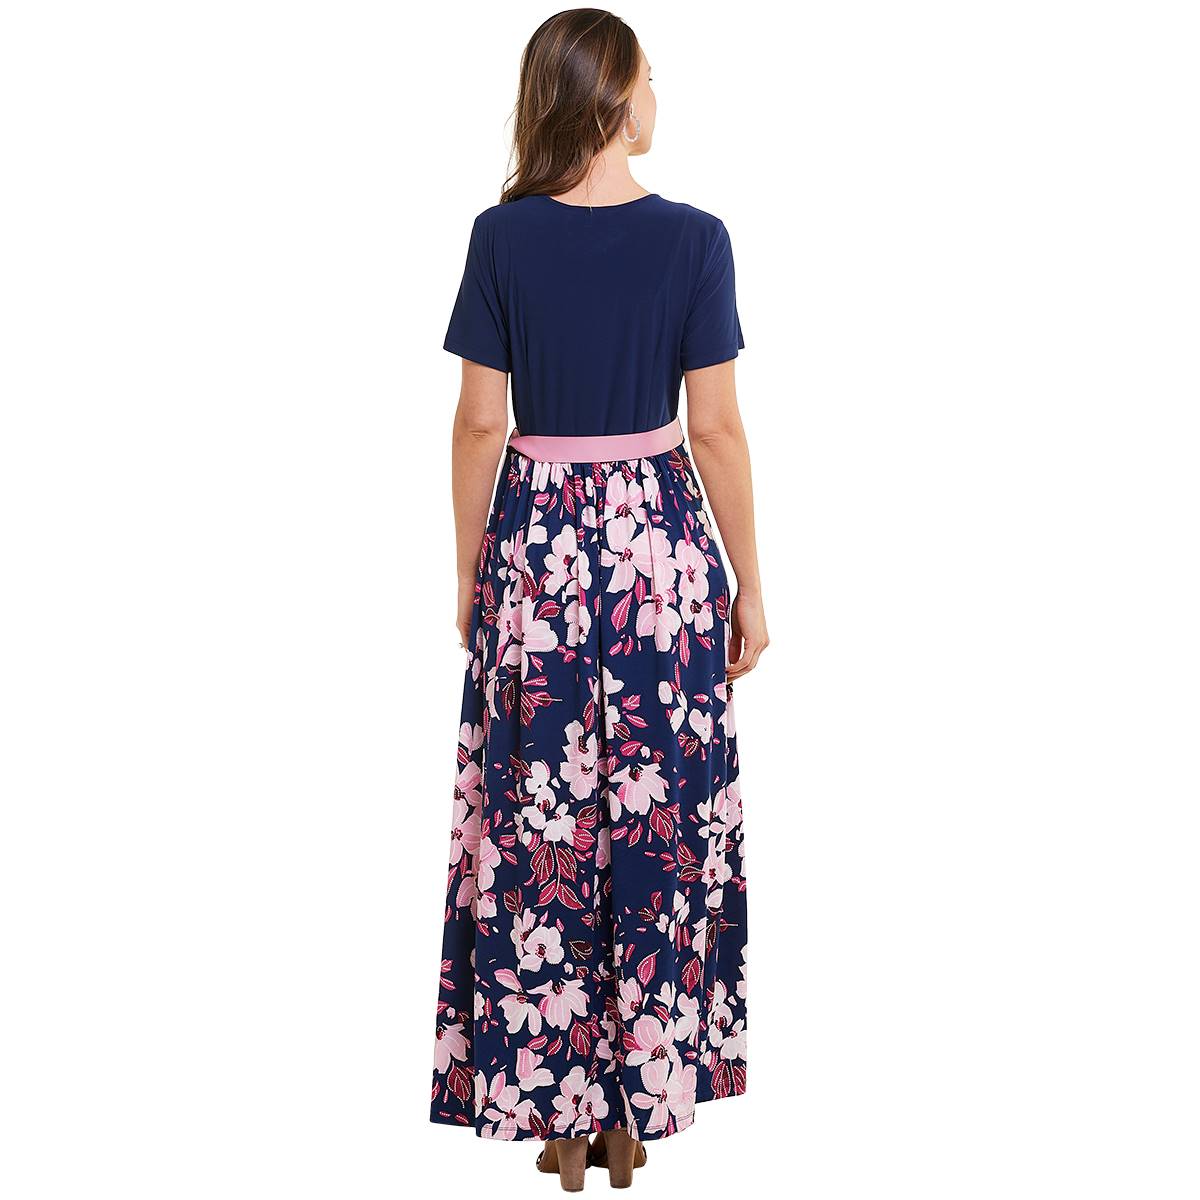 Plus Size Ellen Weaver Solid/Floral Maxi Dress-Navy/Fuchsia